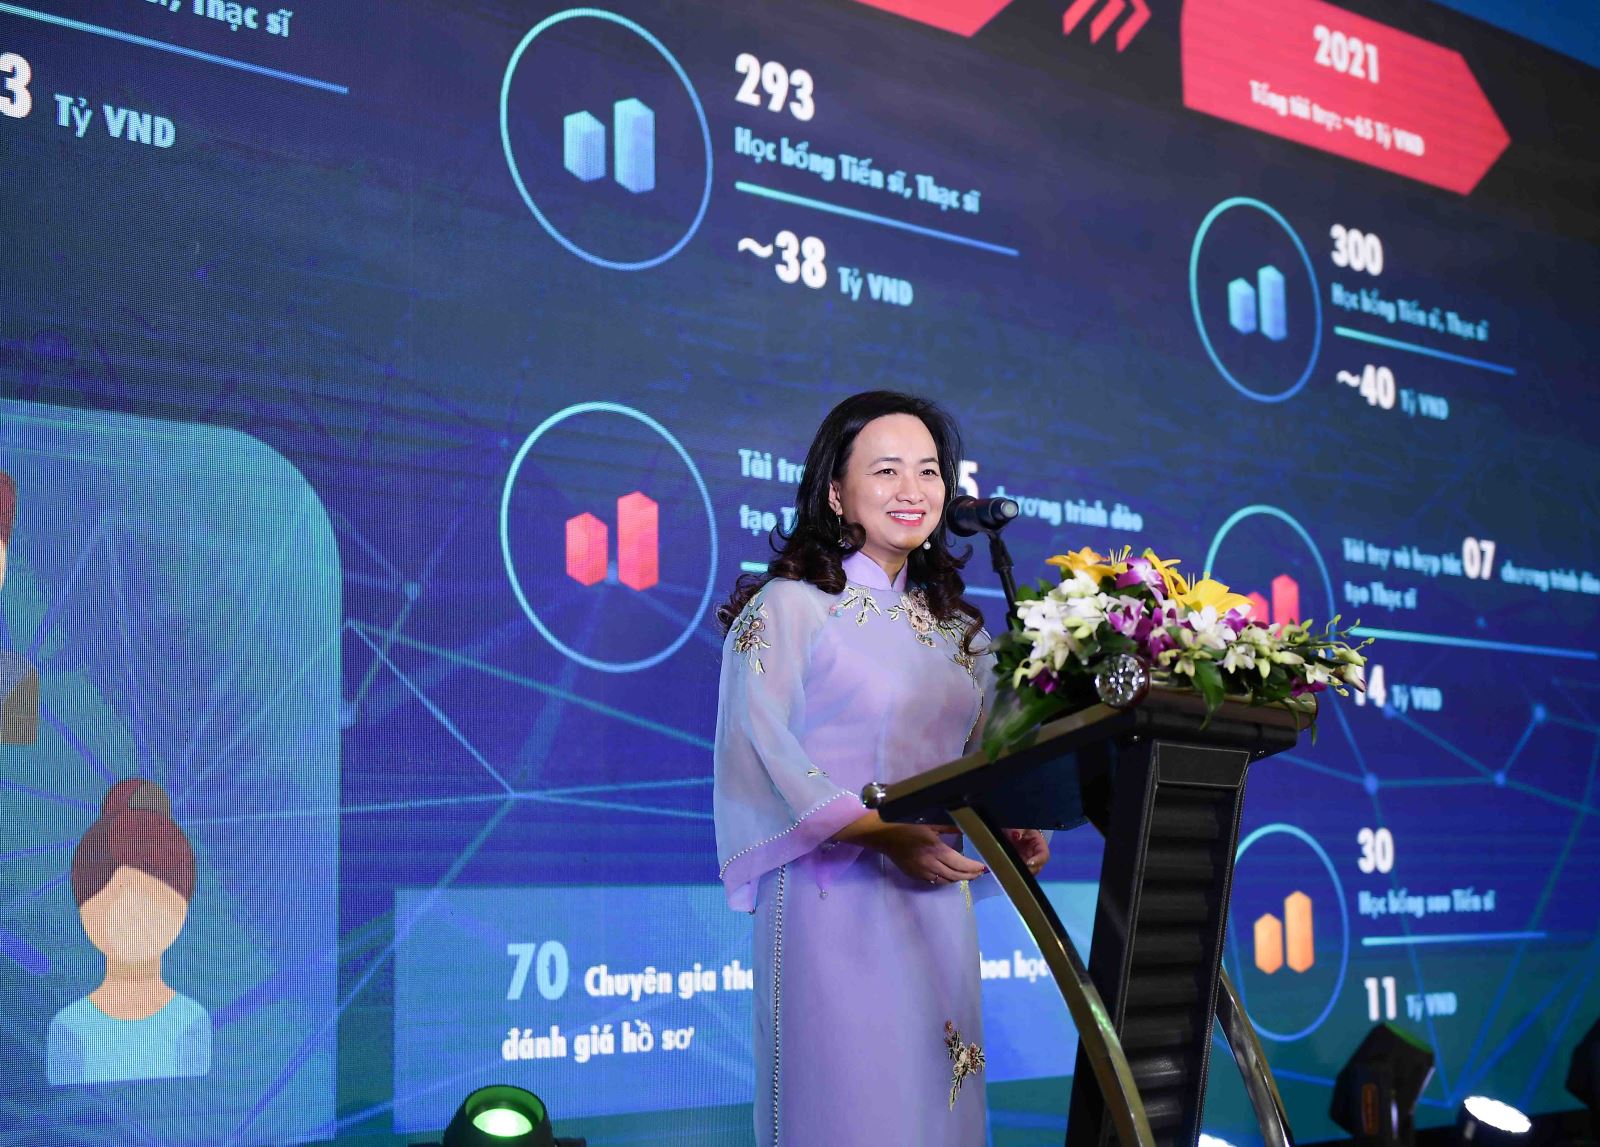 PGS.TSKH. Phan Thị Hà Dương (Giám đốc điều hành VinIF) tổng kết lại hành trình kết nối và phát triển nguồn nhân lực trình độ cao của Quỹ sau 2 năm